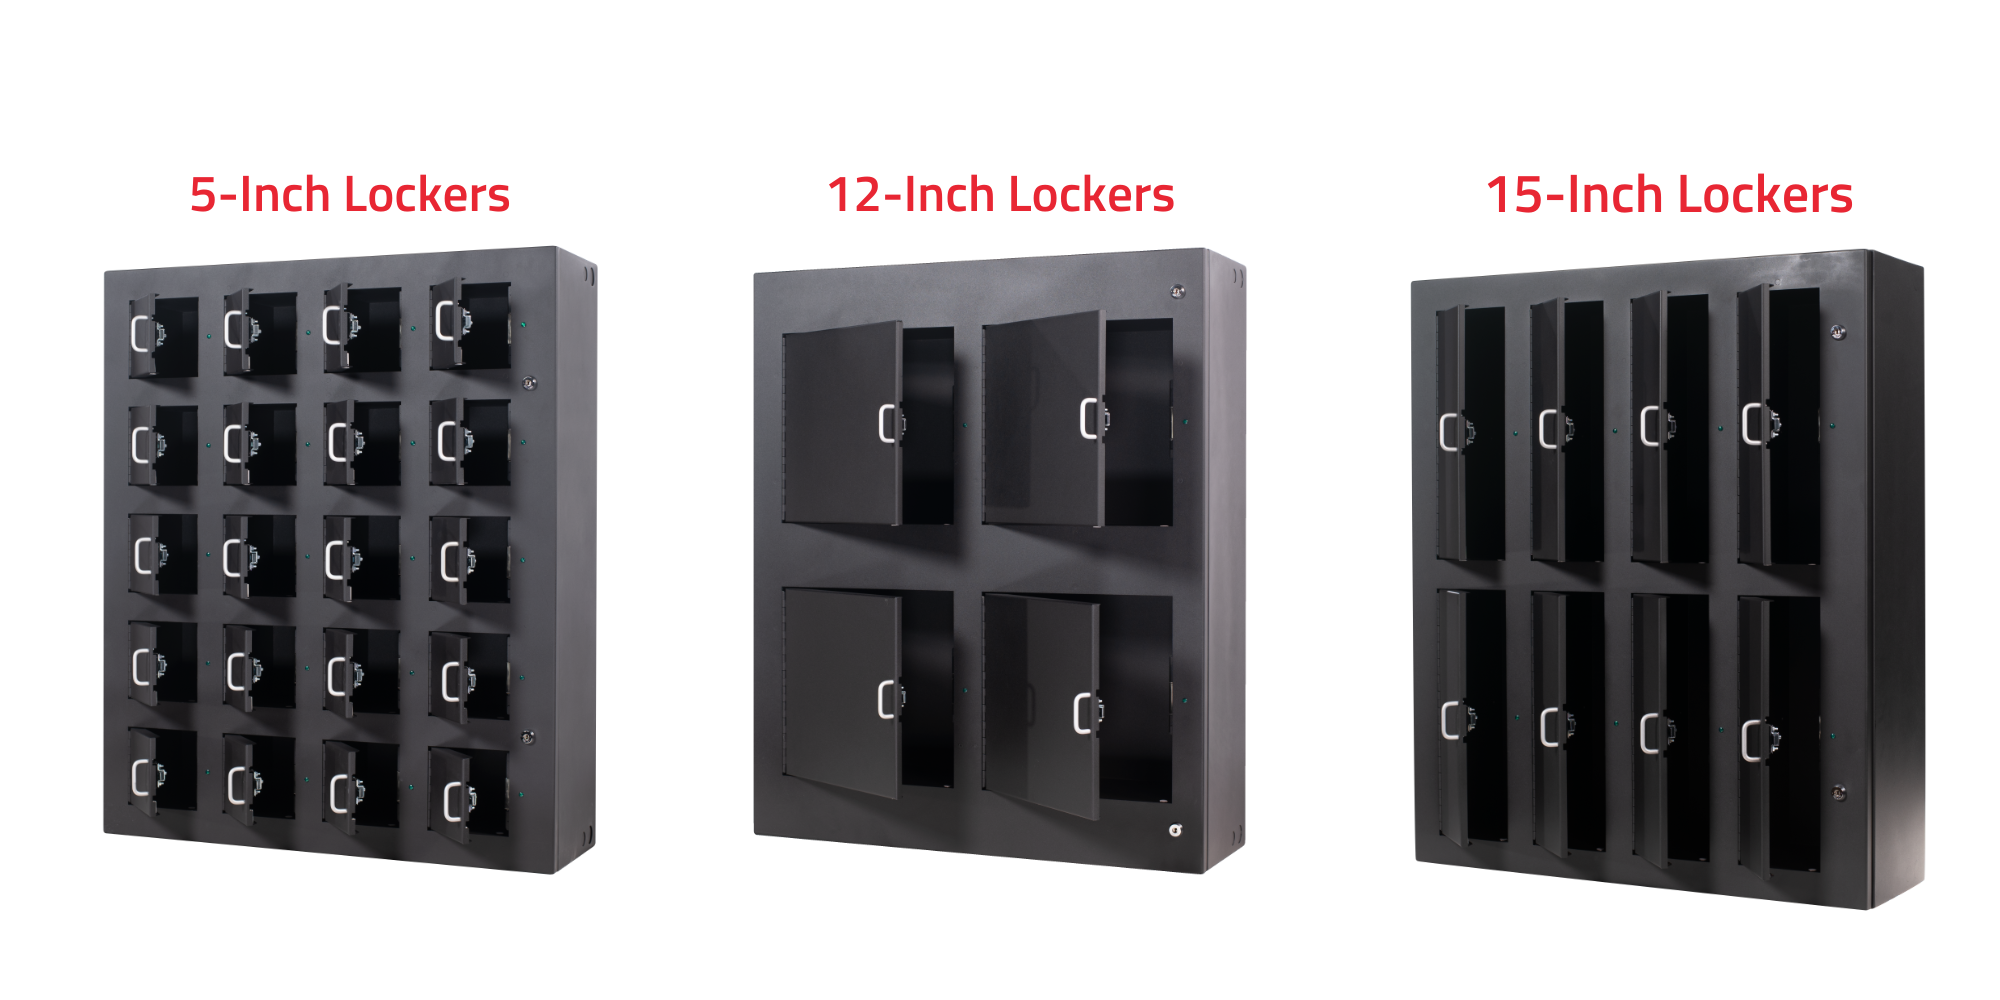 KeyTrak Guardian locker sizes: 5-inch, 12-inch, and 15-inch